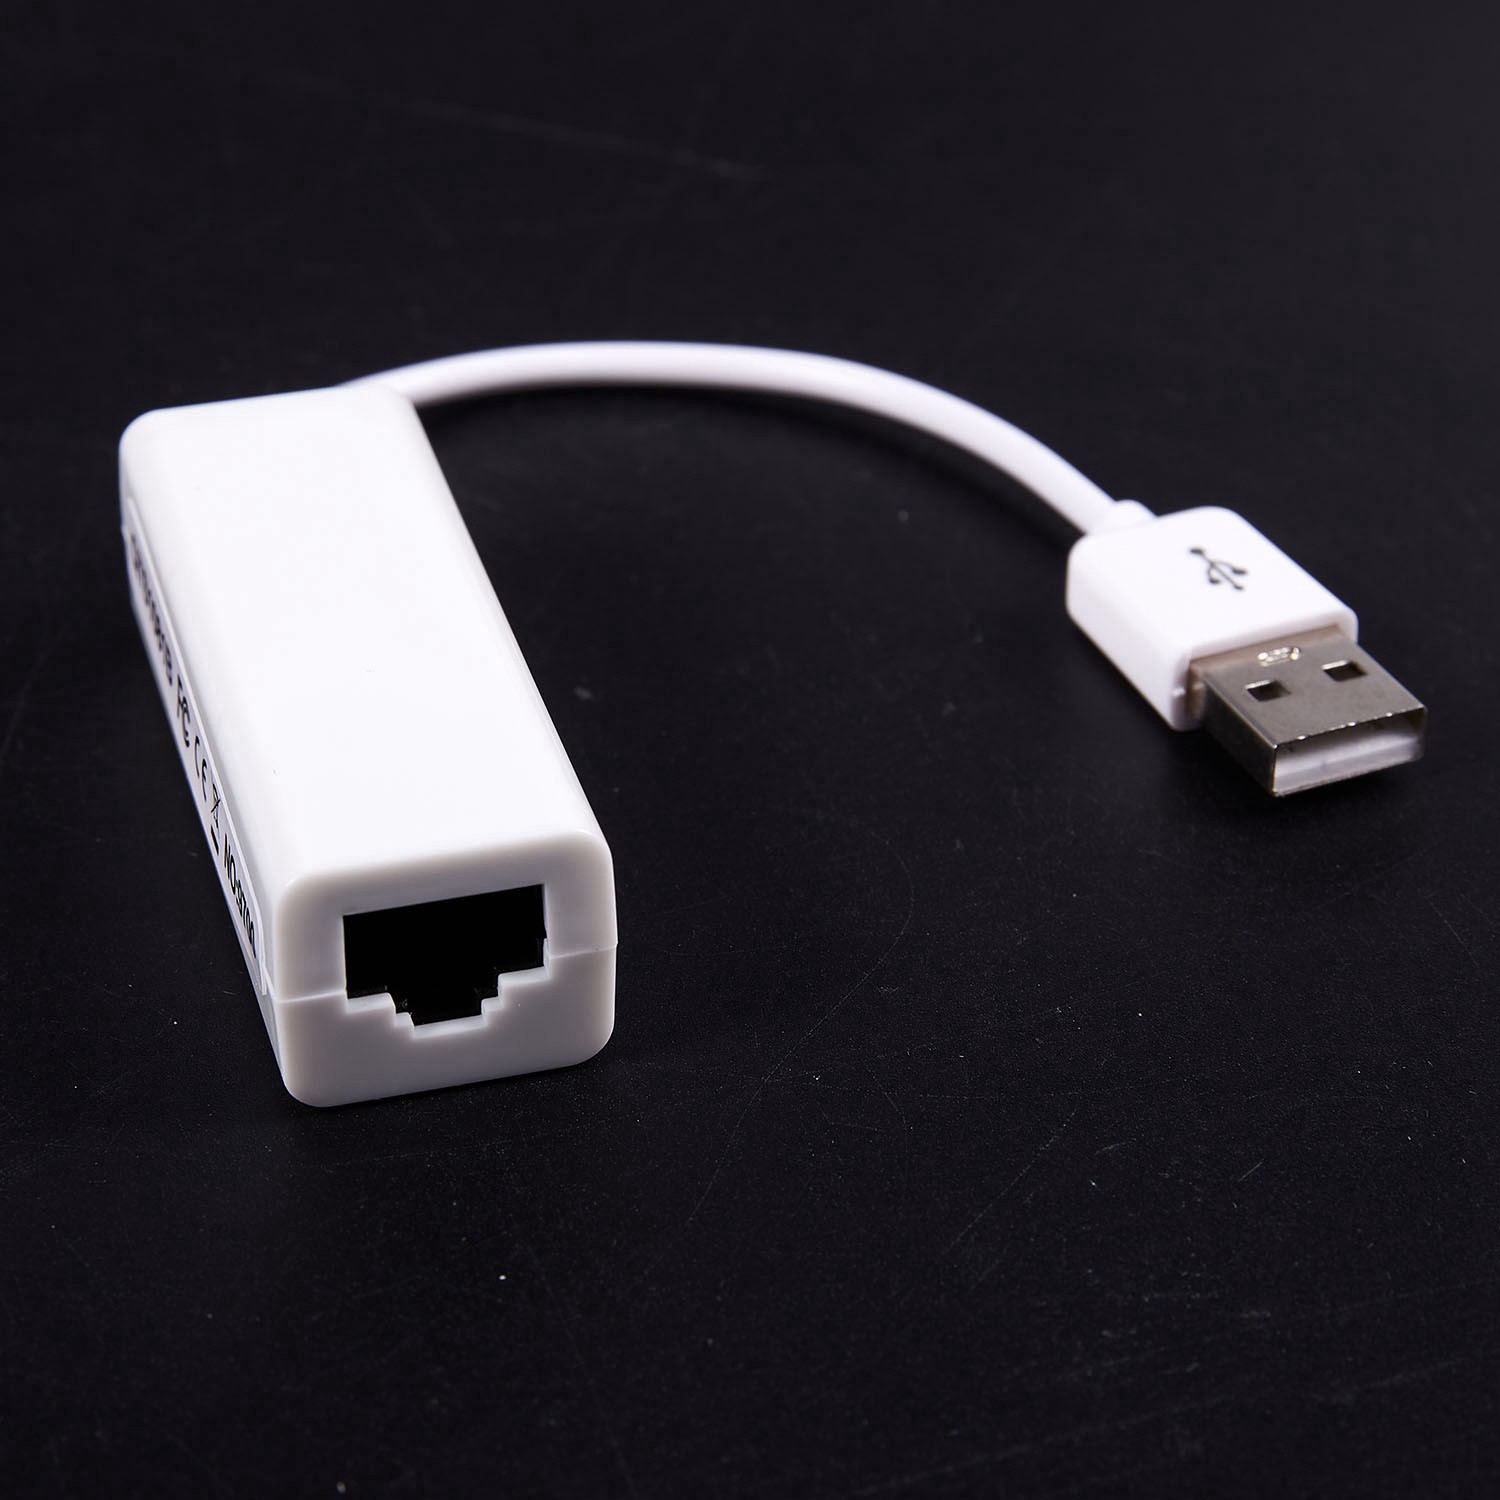 (Đang Bán) Bộ Chuyển Đổi Usb 2.0 Sang Rj45 Lan Ethernet Network Adapter For Apple Mac Macbook Air Laptop Pc